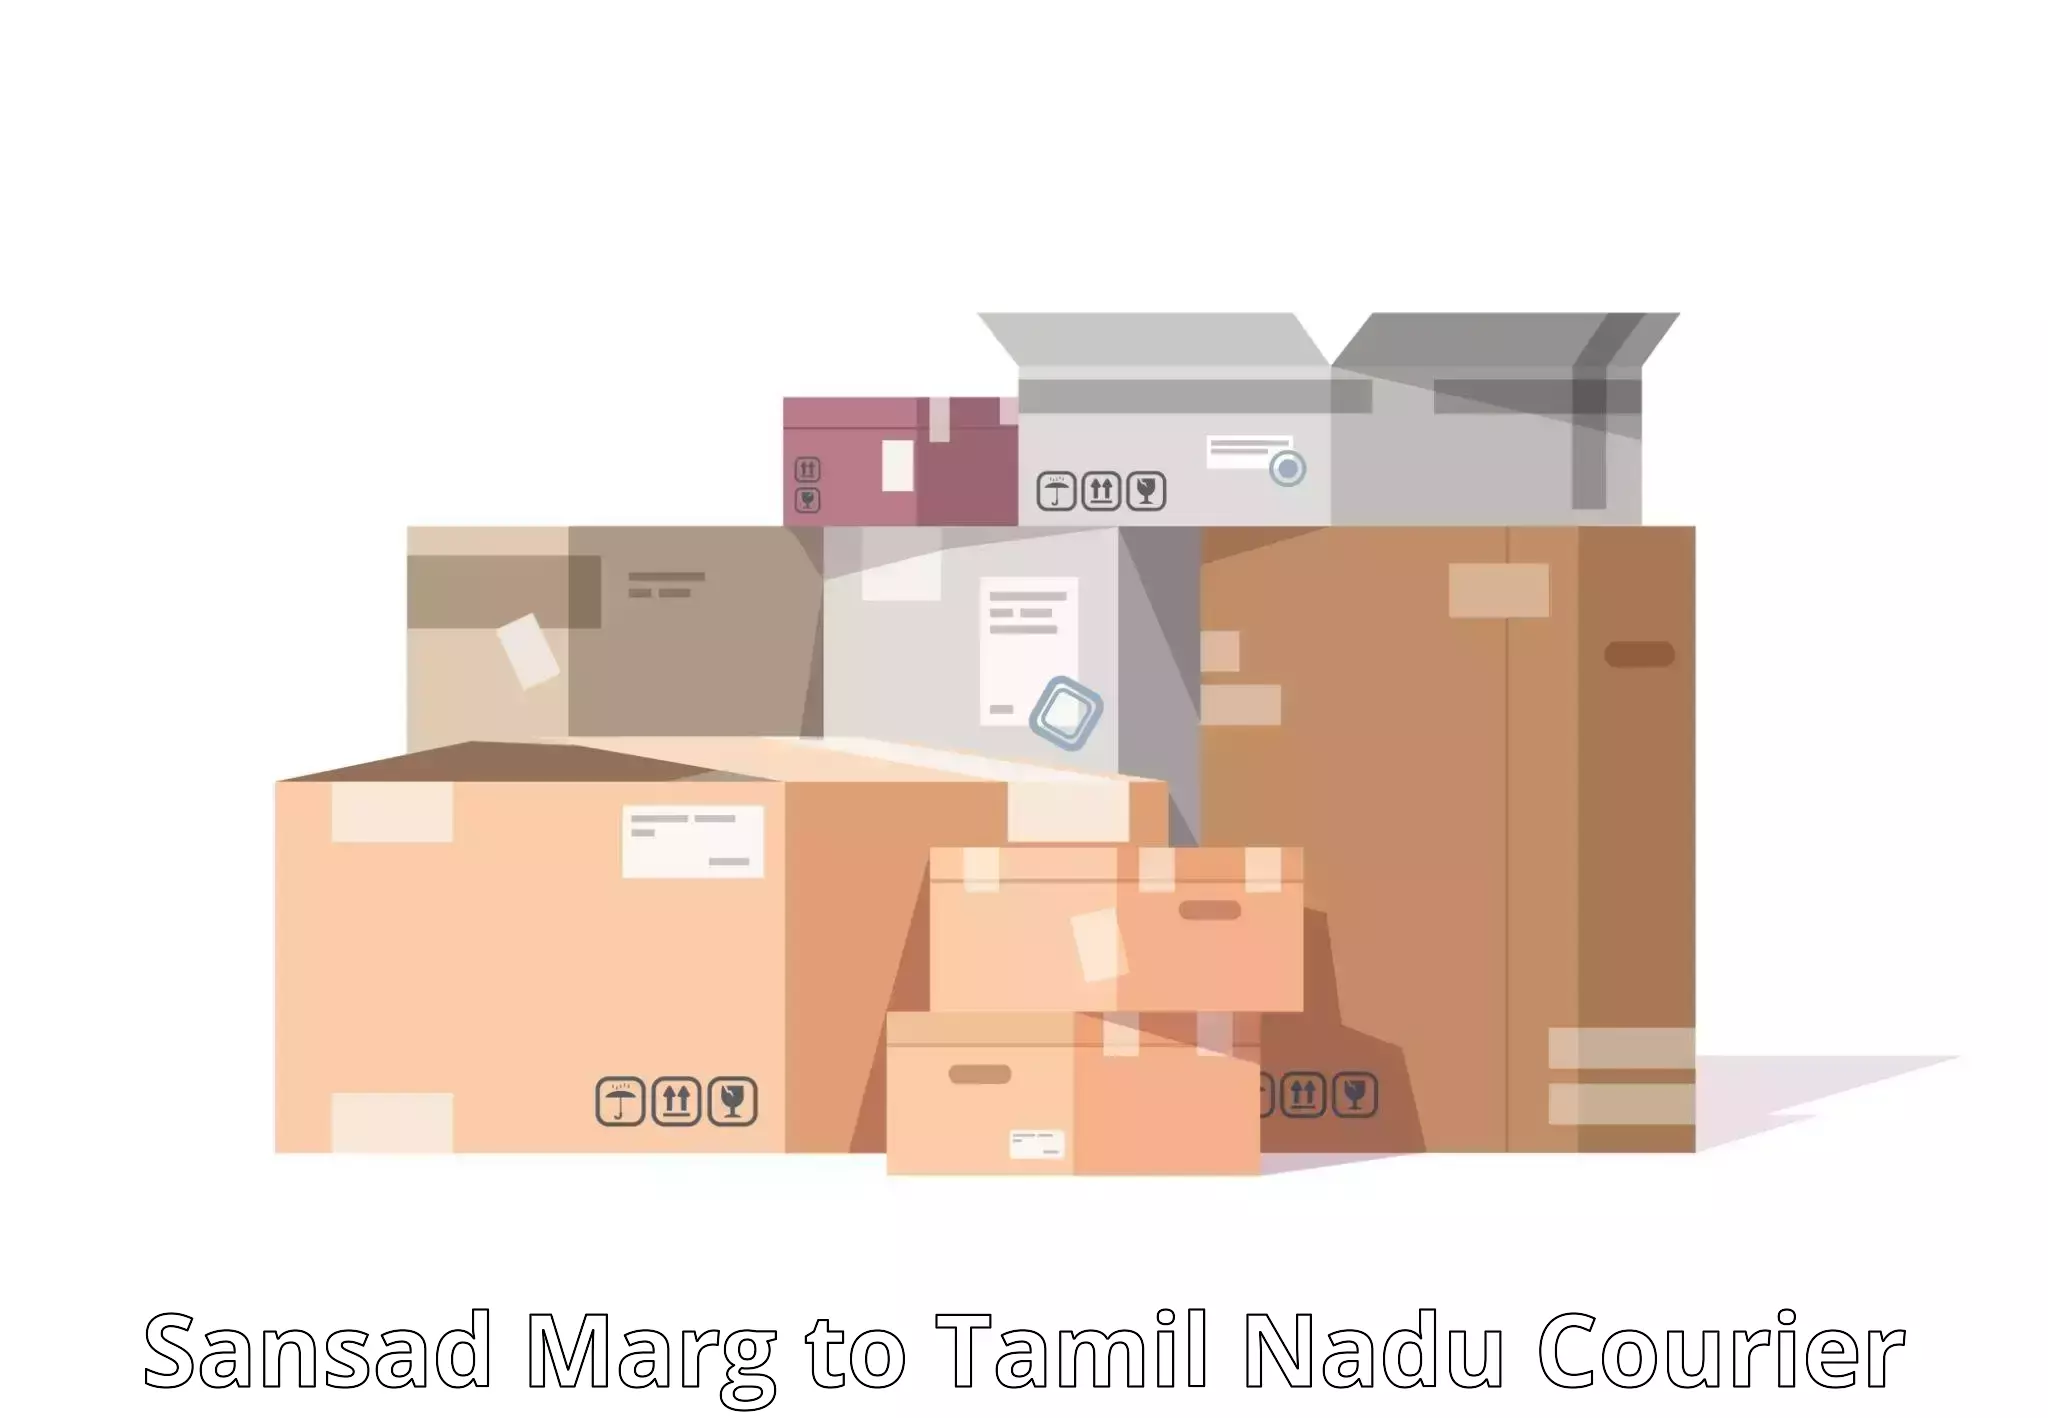 Nationwide shipping coverage Sansad Marg to Theni